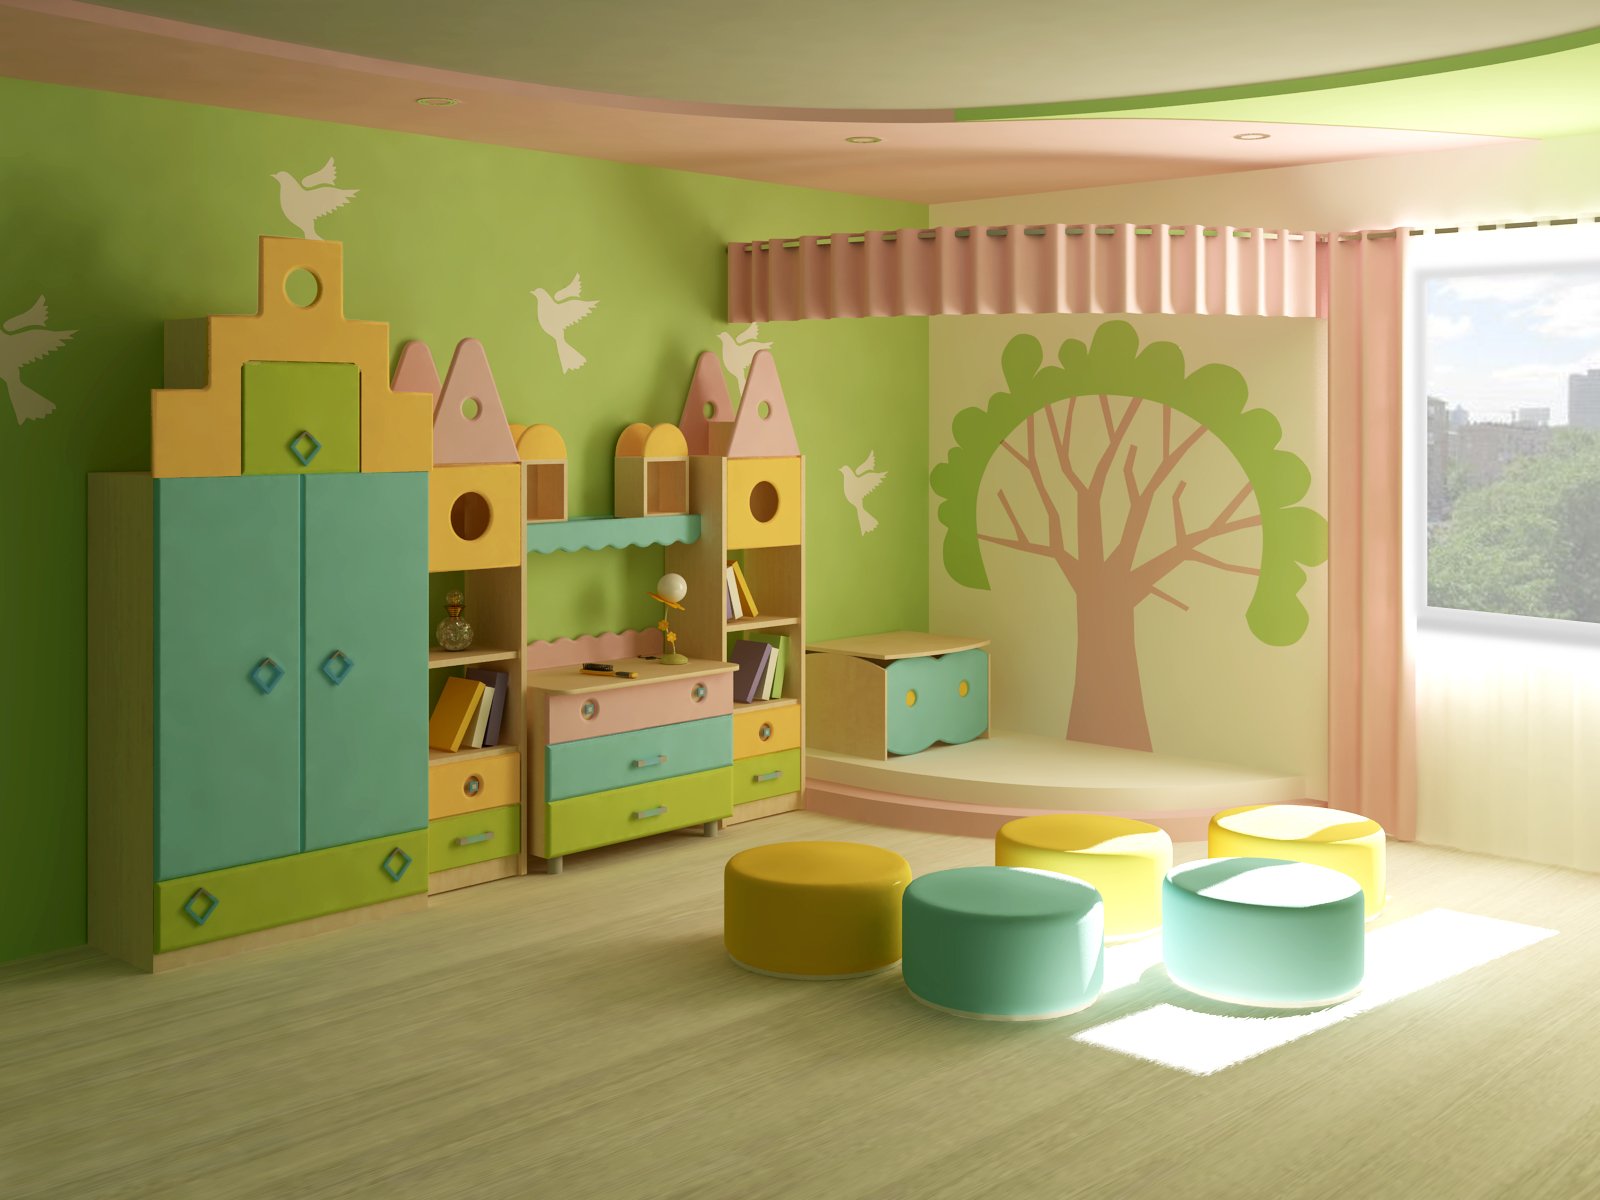 Для садика детского купить. Мебель для детского сада. Интерьер детского сада. Мебель для игровой комнаты в детском саду. Интерьер группы в детском саду.